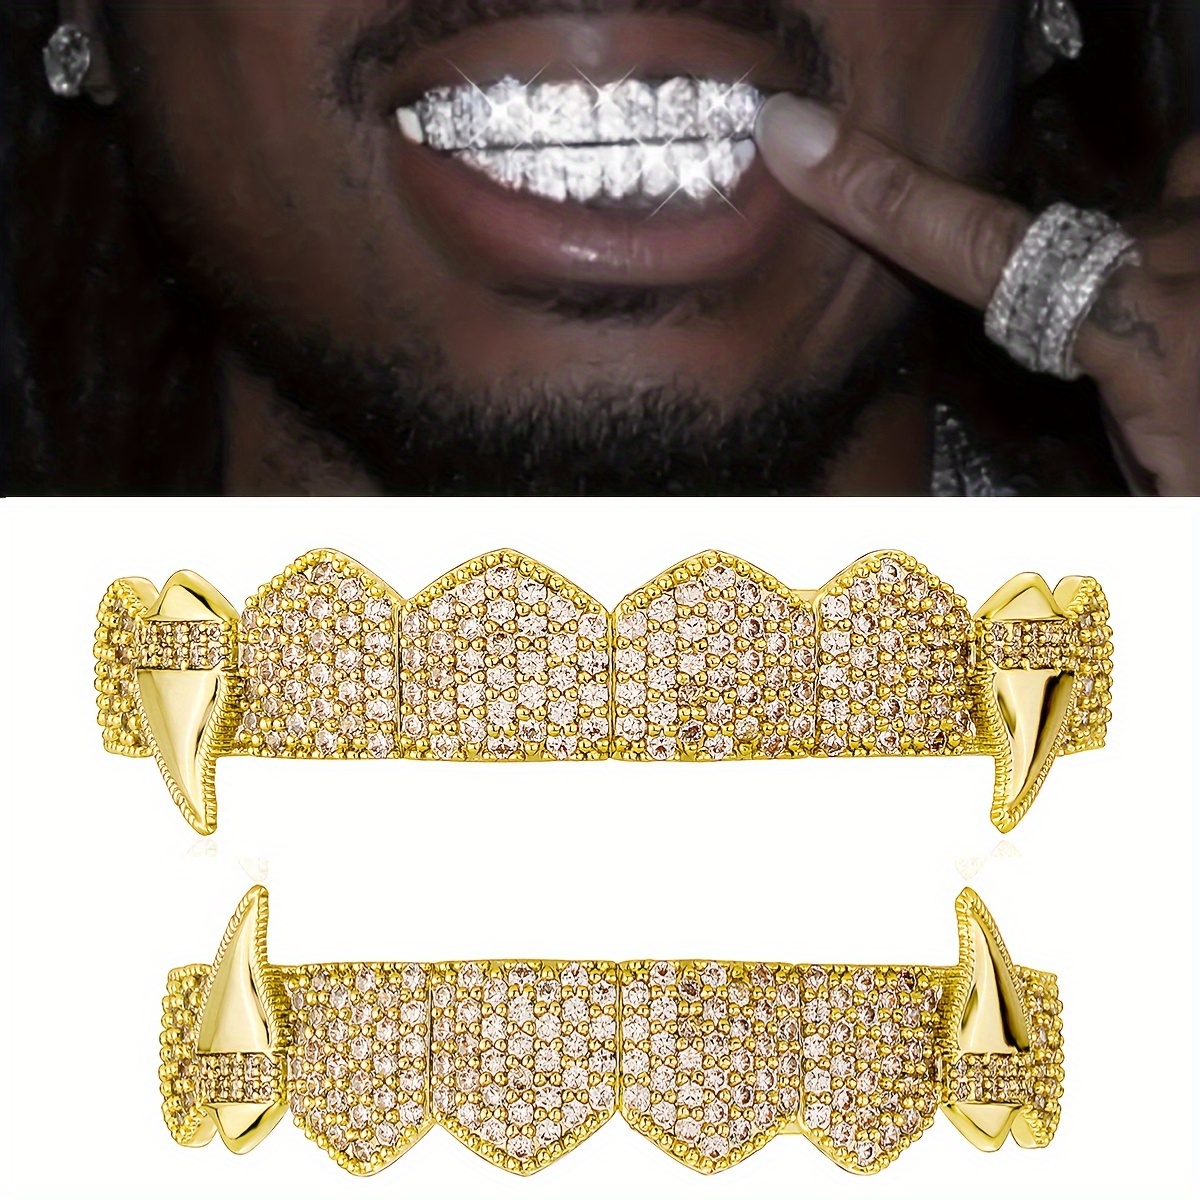 Grillz de dientes CZ chapado en oro y plata para Unisex, juego de parrillas  superior e inferior, joyería Dental Punk, Hip Hop